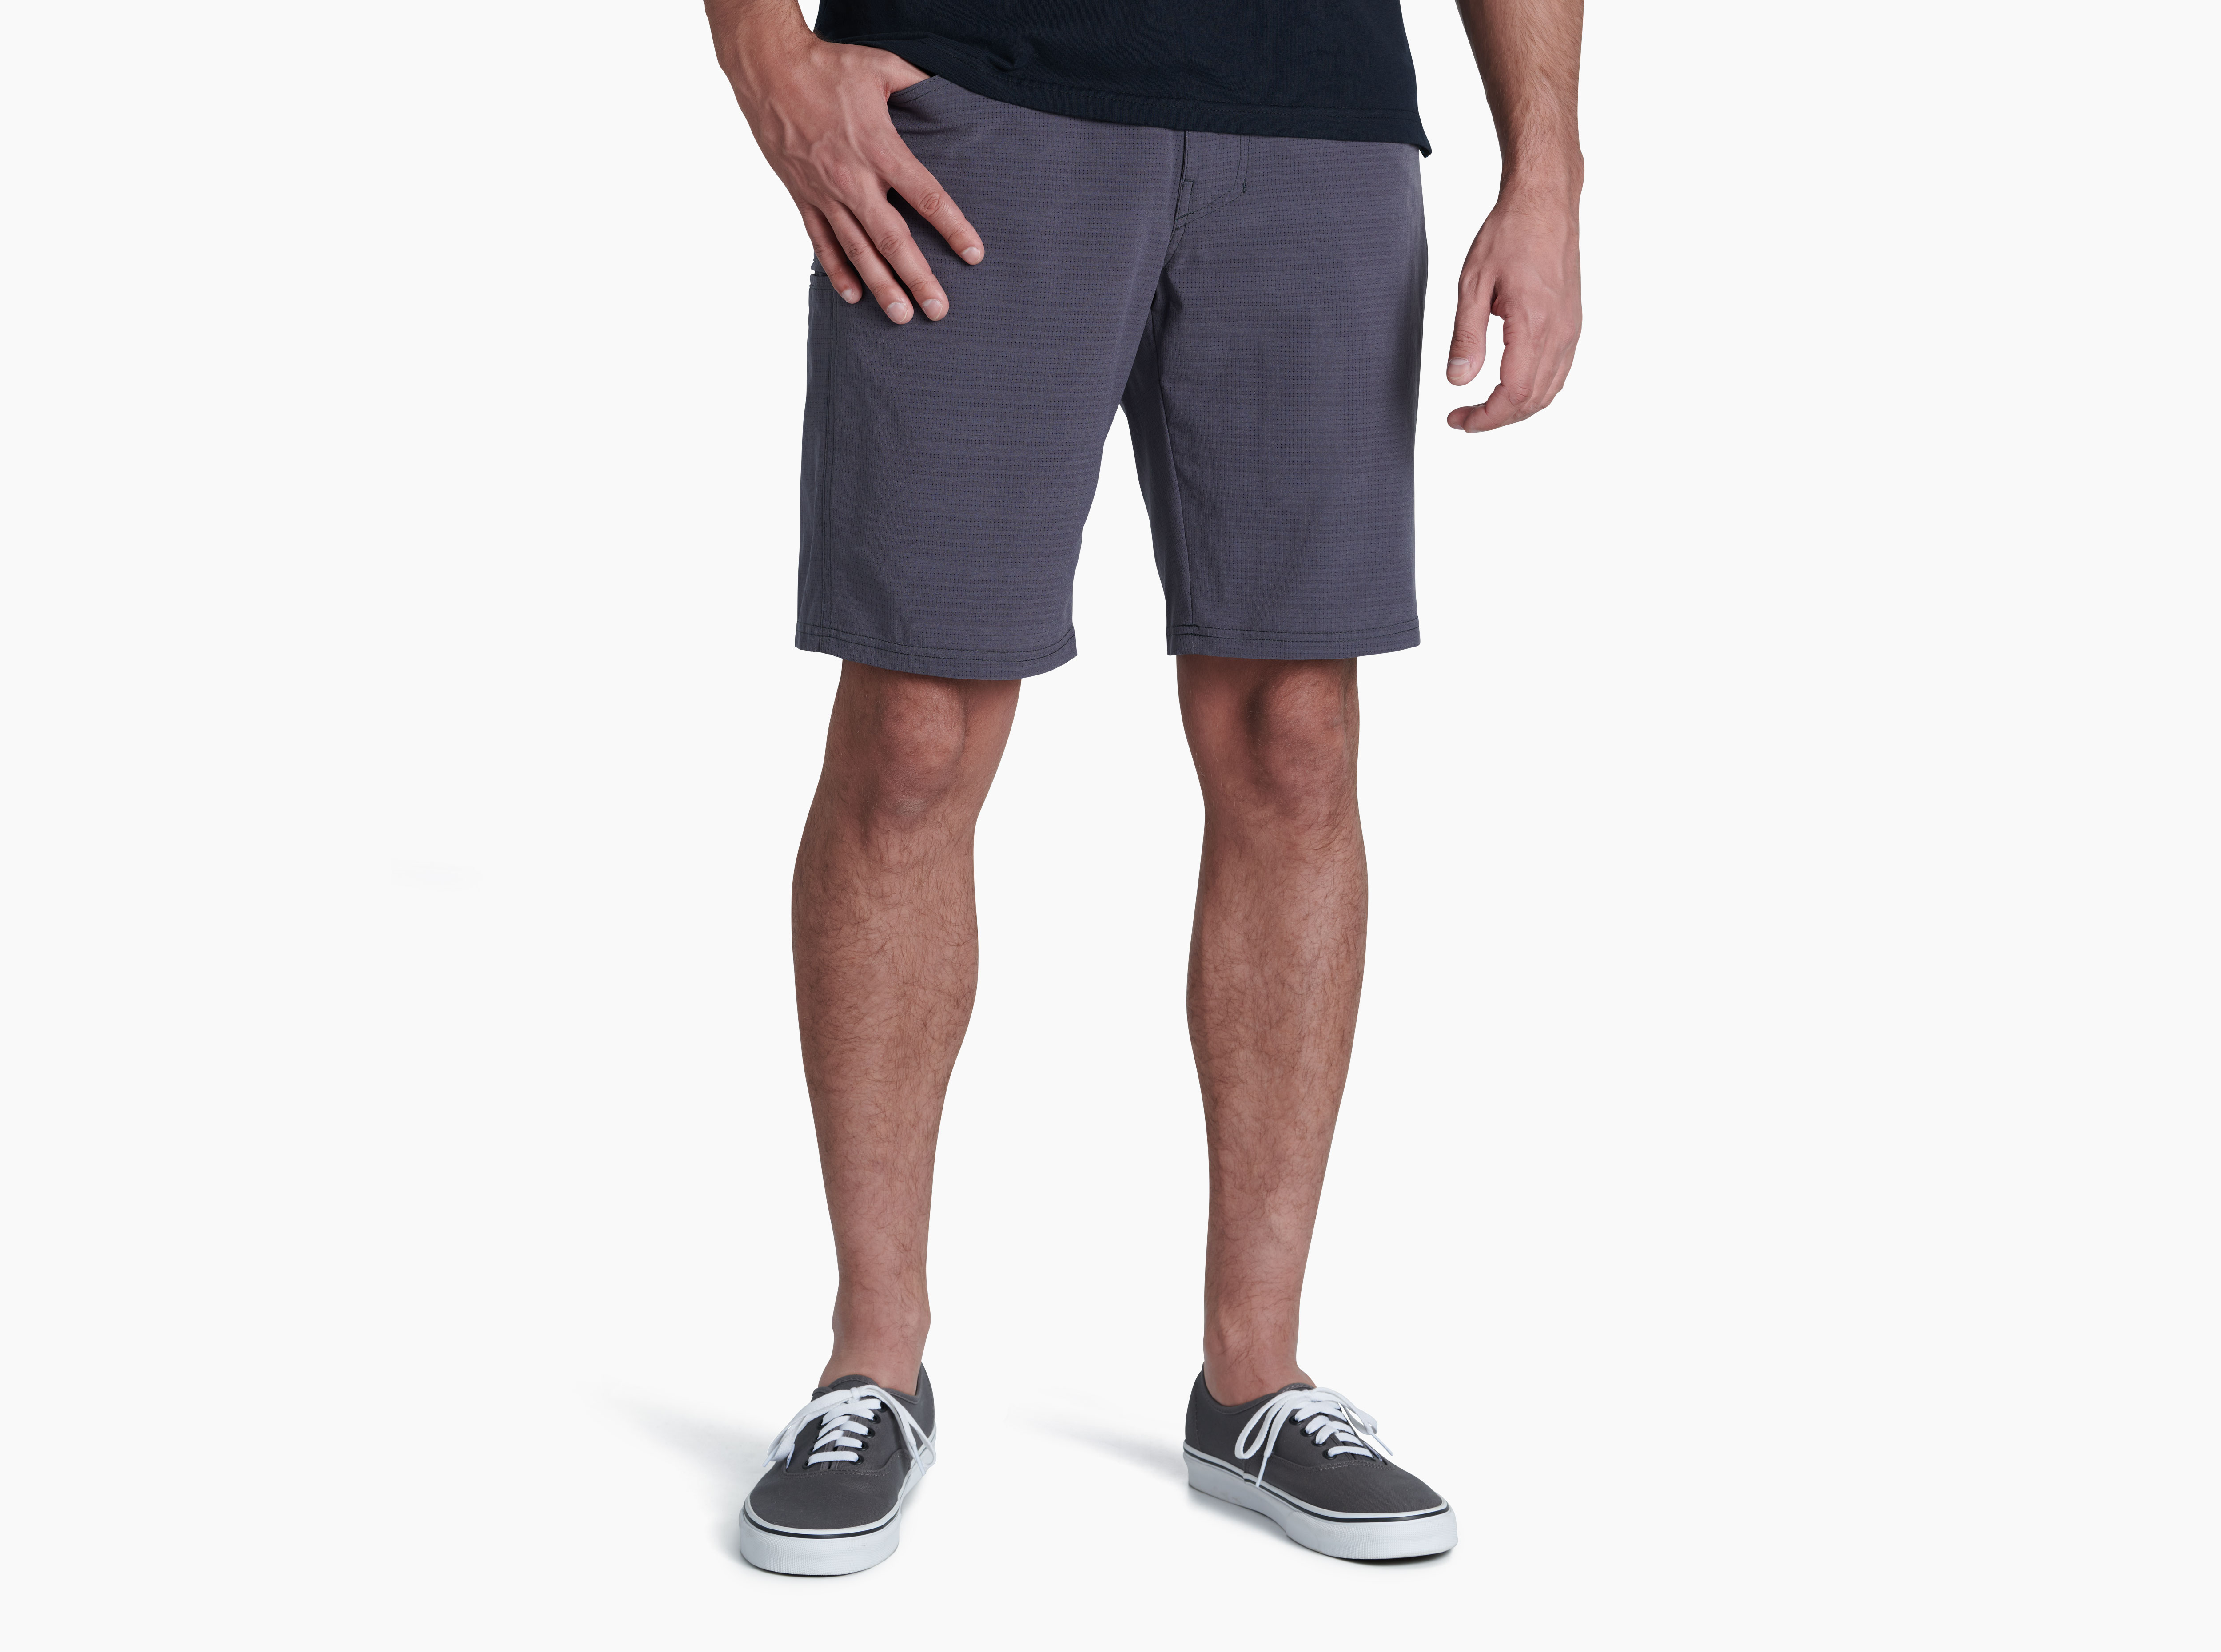 Upriser™ Short in Men's Shorts | KÜHL Clothing